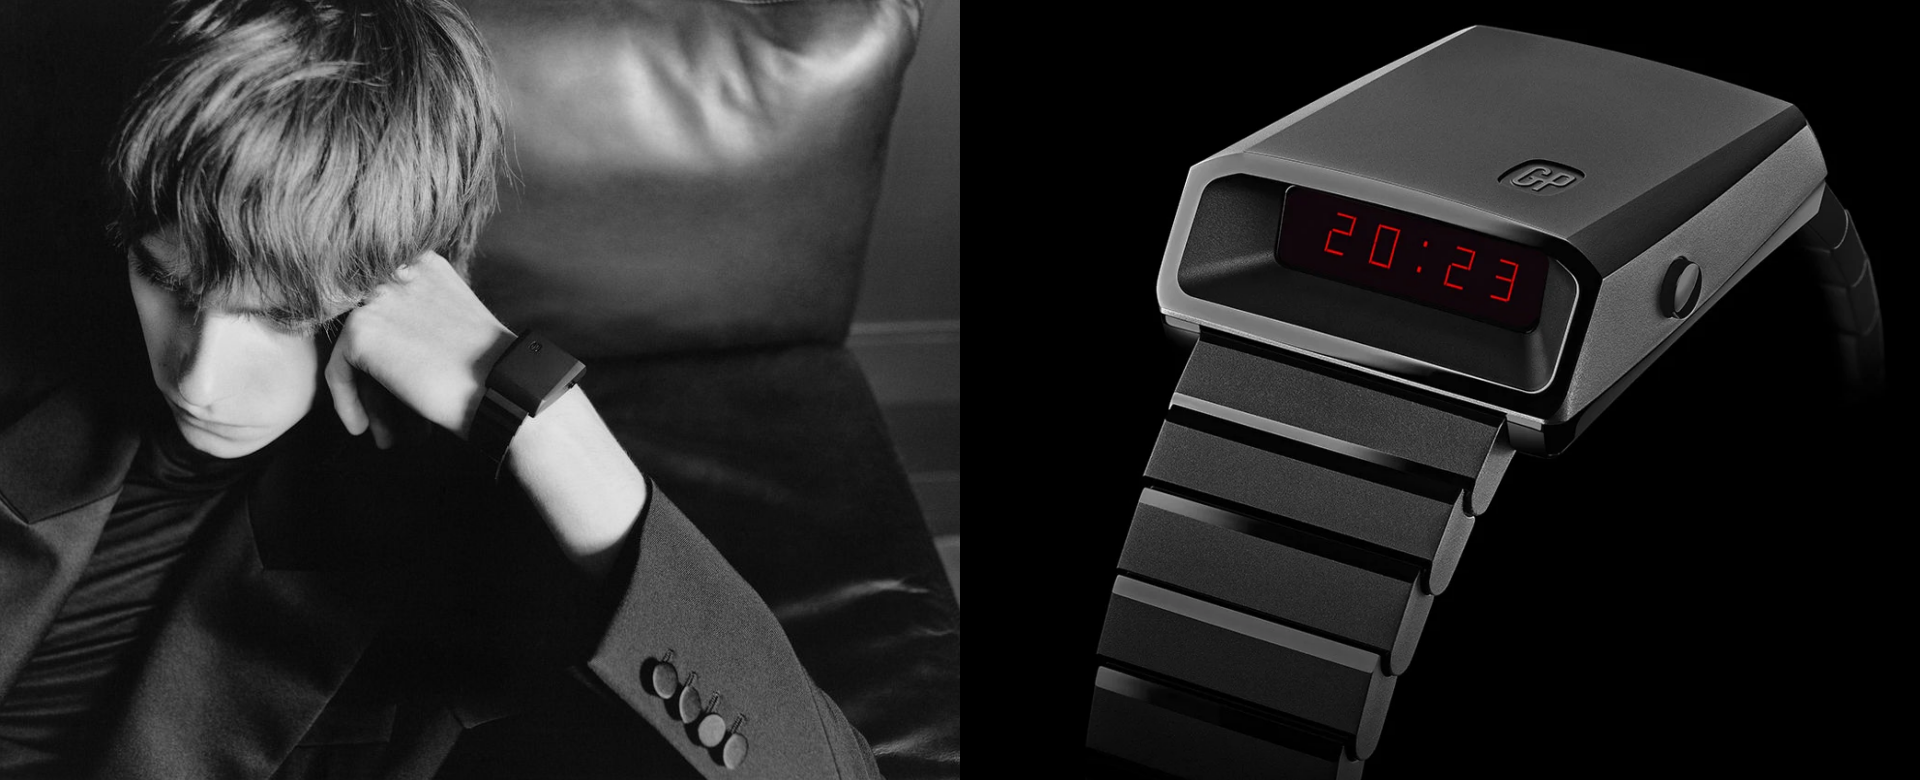 Modern Collectible: Saint Laurent tái thiết kế mẫu đồng hồ biểu tượng của Girard-Perregaux